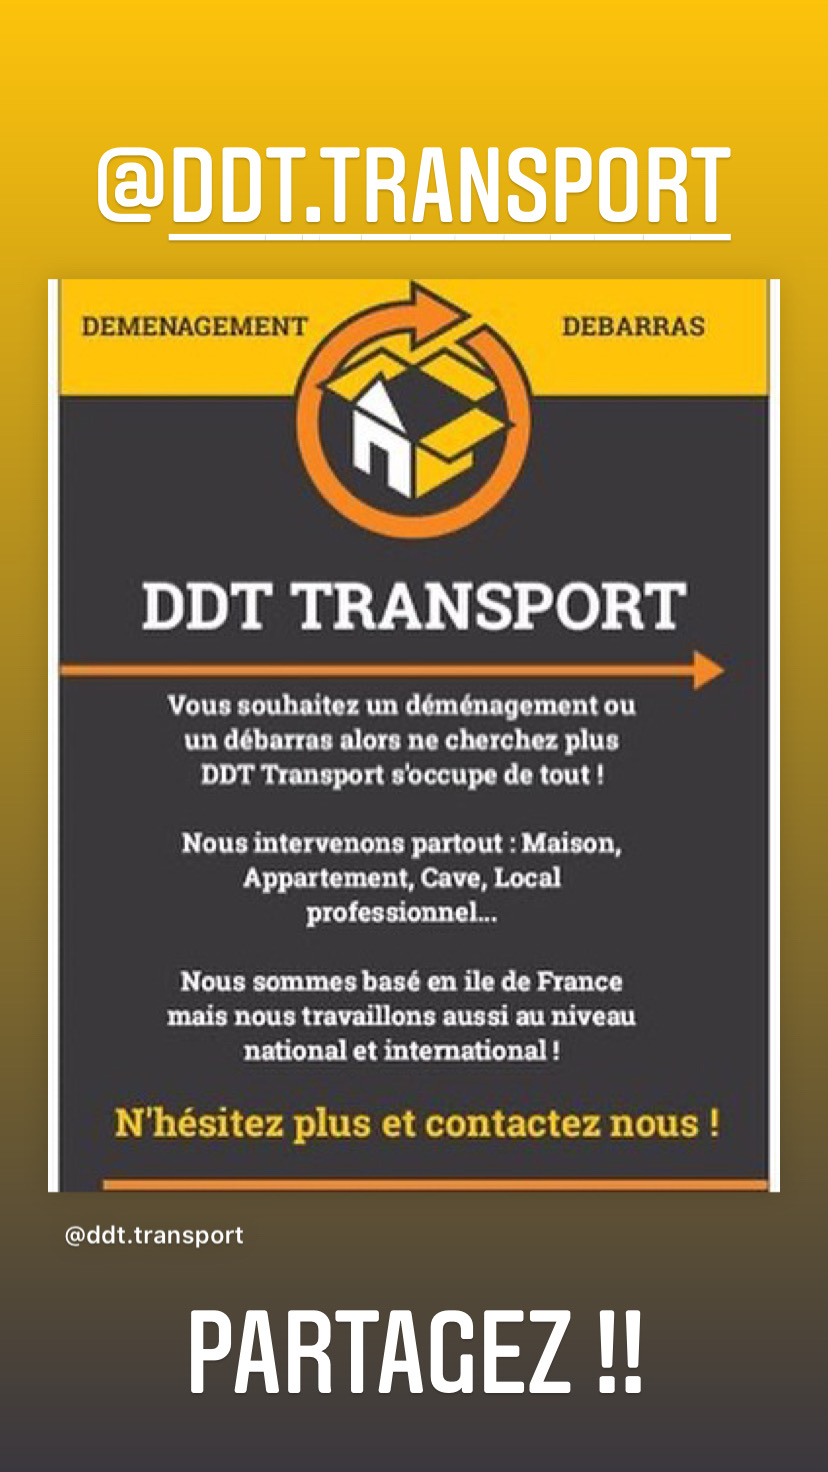 Je propose mon entreprise du nom de DDT TRANSPORT ouverte depuis novembre 2020 au rachat. J’étudie toute proposition et suis à disposition pour toute information complémentaire.